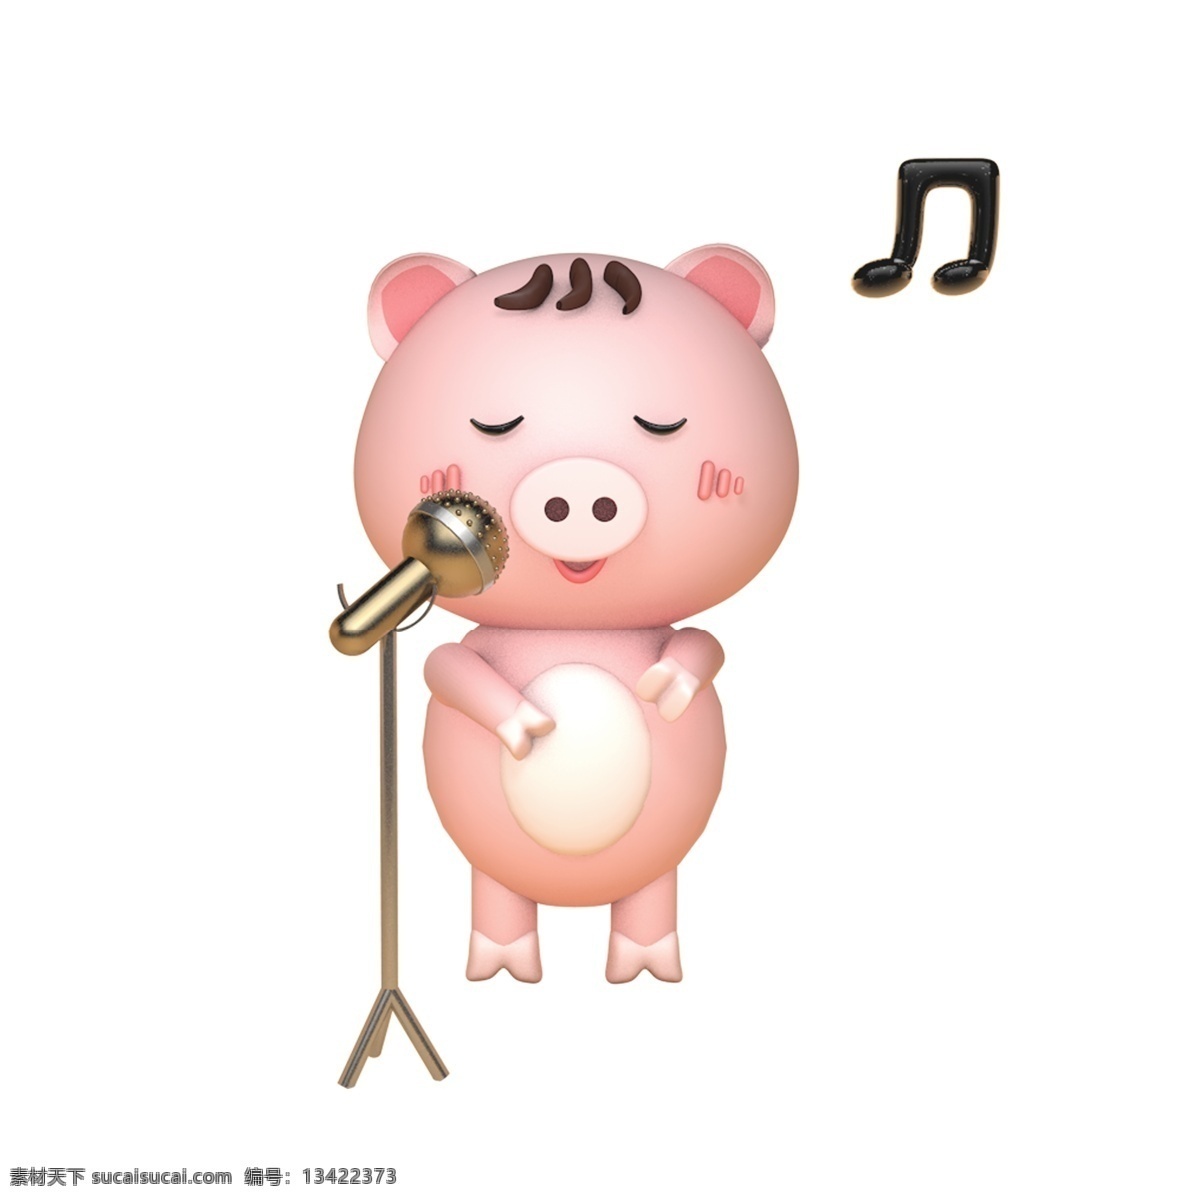 2019 生肖 猪 猪年 原创 商用 元素 音乐 音符 动物 春节 人物 过年 新年 粉嫩 q版 c4d 卡通 手绘 节日 公仔